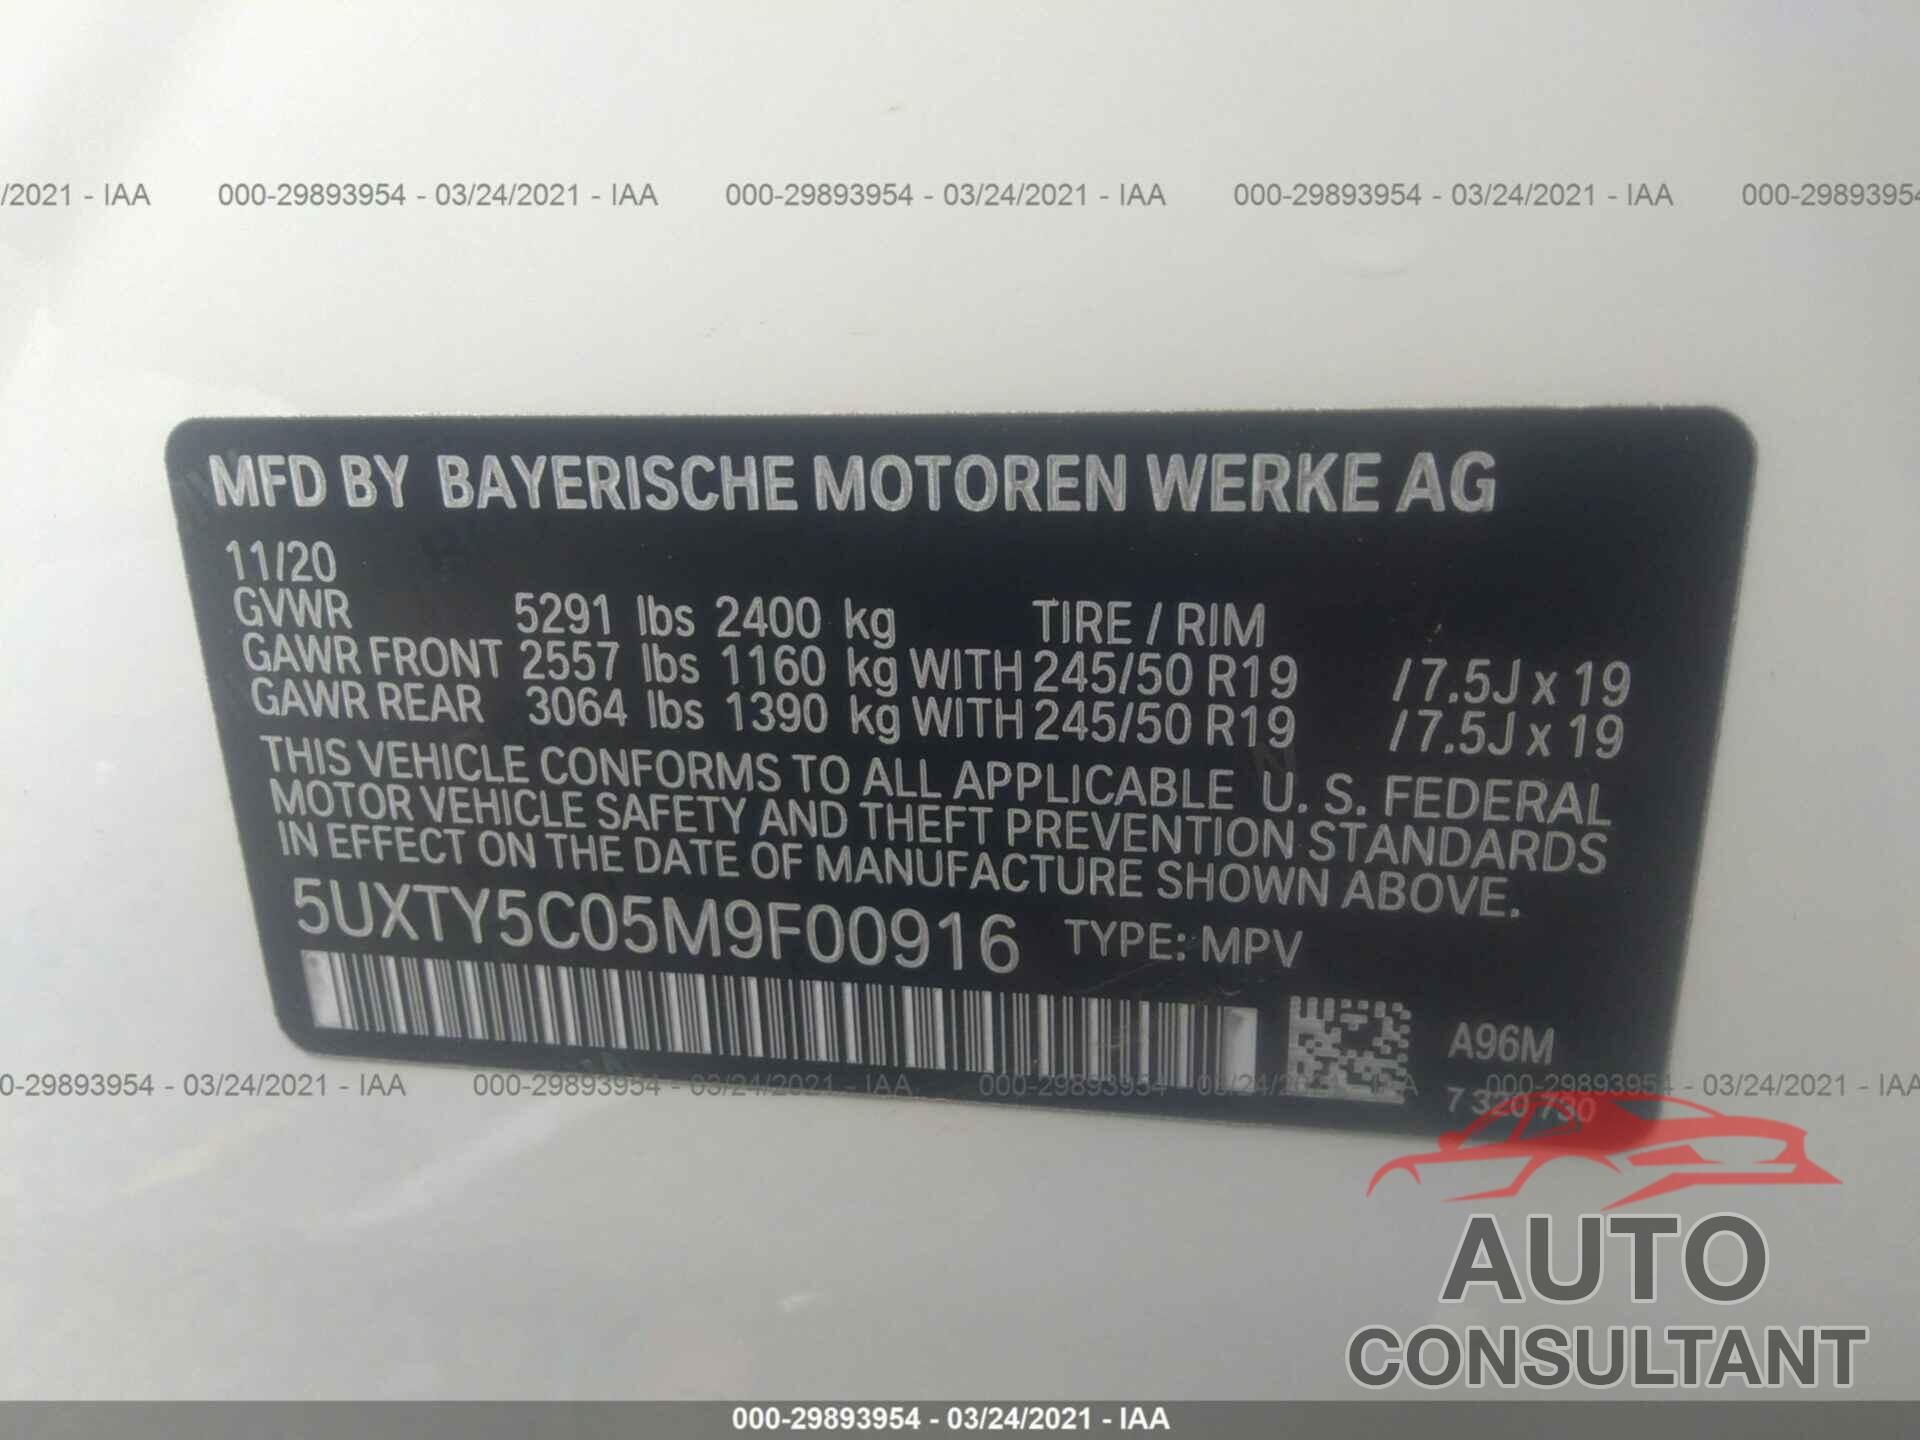 BMW X3 2021 - 5UXTY5C05M9F00916